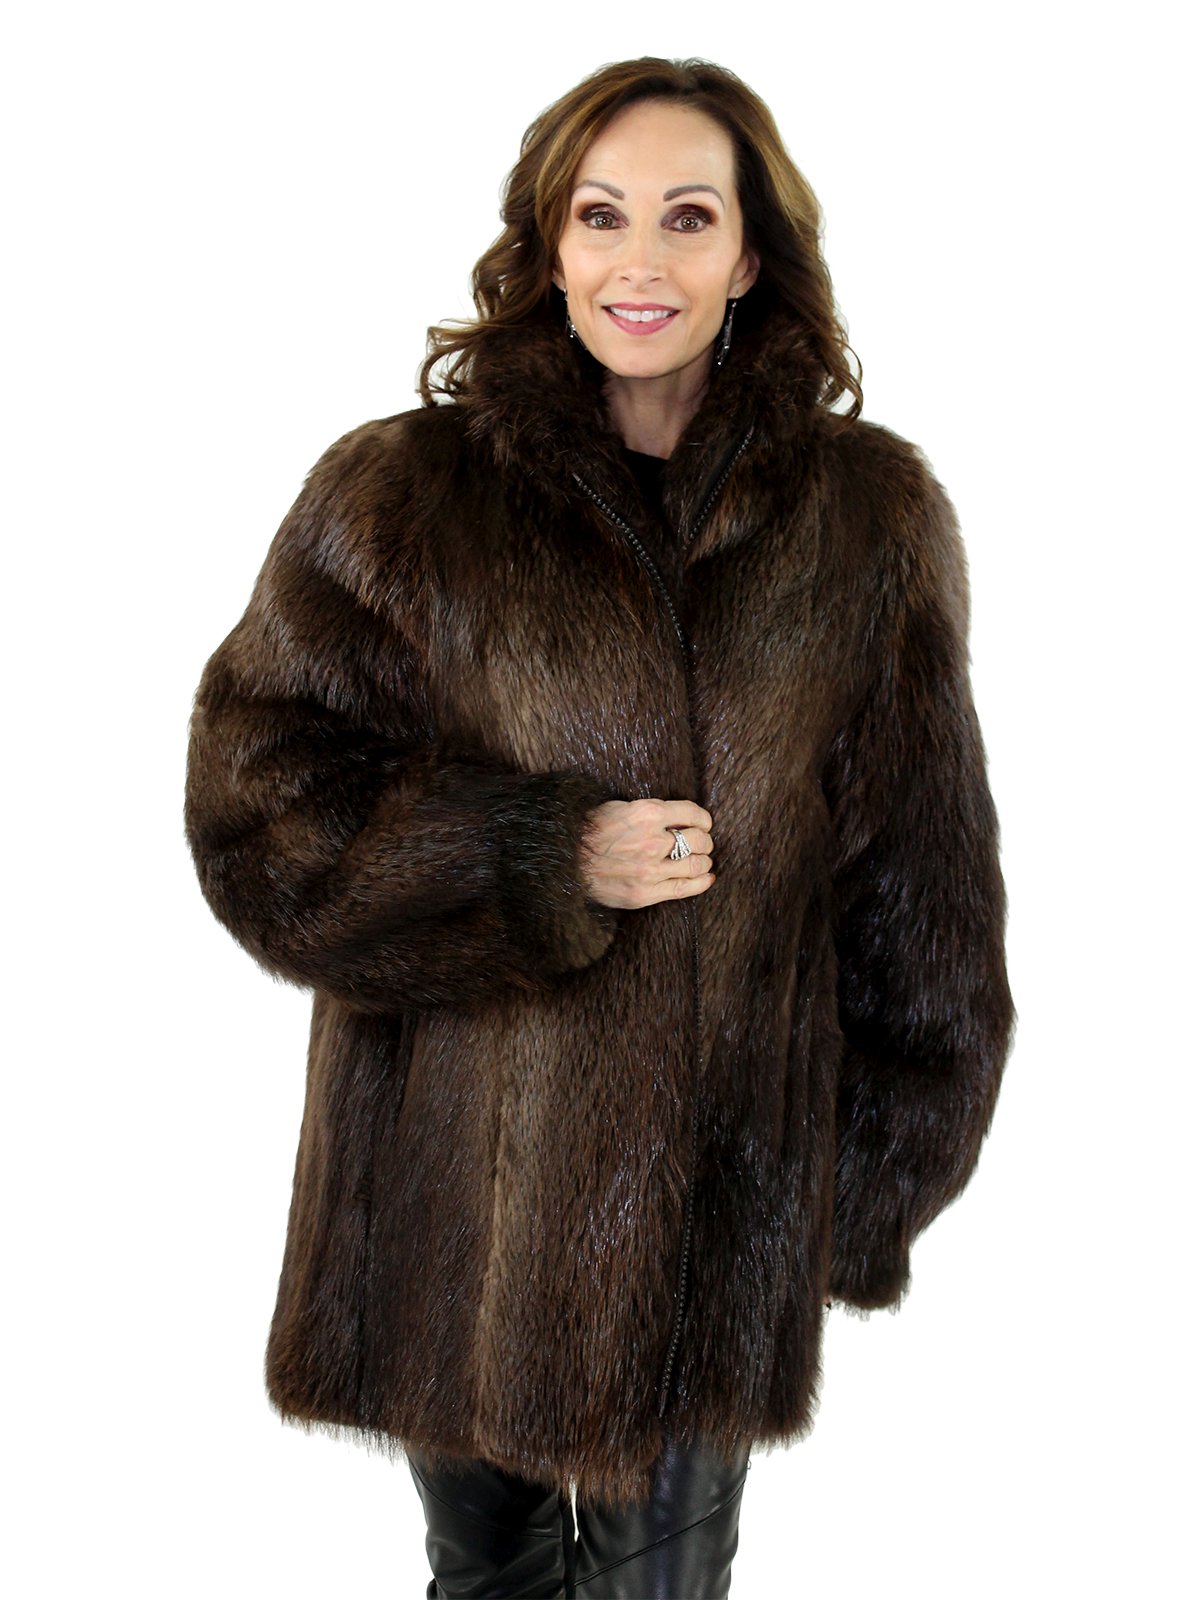 Rosewood Long Hair Beaver Fur Jacket - Women's Fur Jacket - Large ...